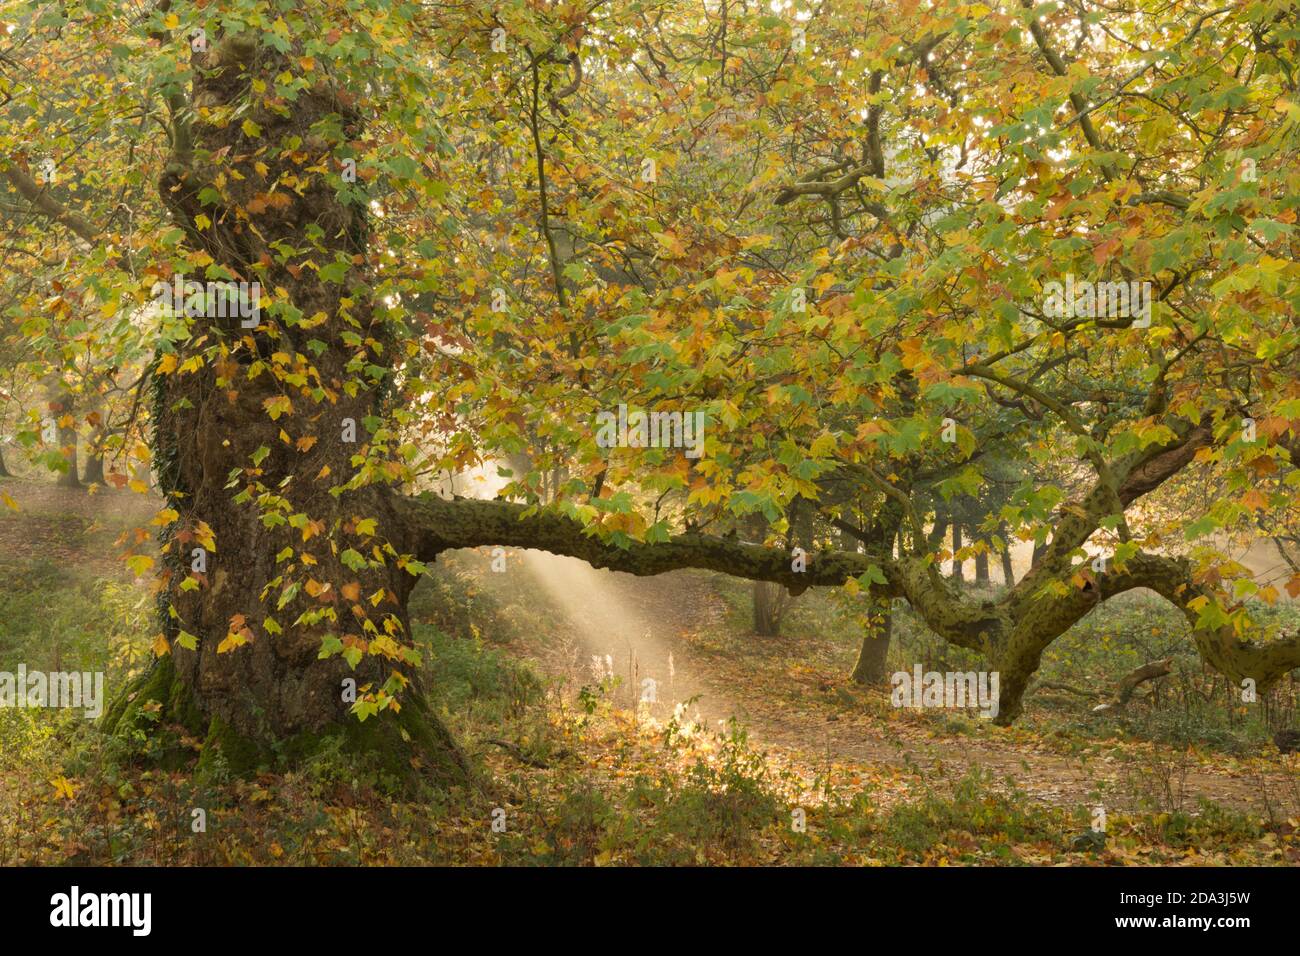 il sole passa attraverso la nebbia con un platano londinese a Cowdray Park, Midhurst, Sussex, UK London Plane, Platanus × acerifolia, novembre Foto Stock